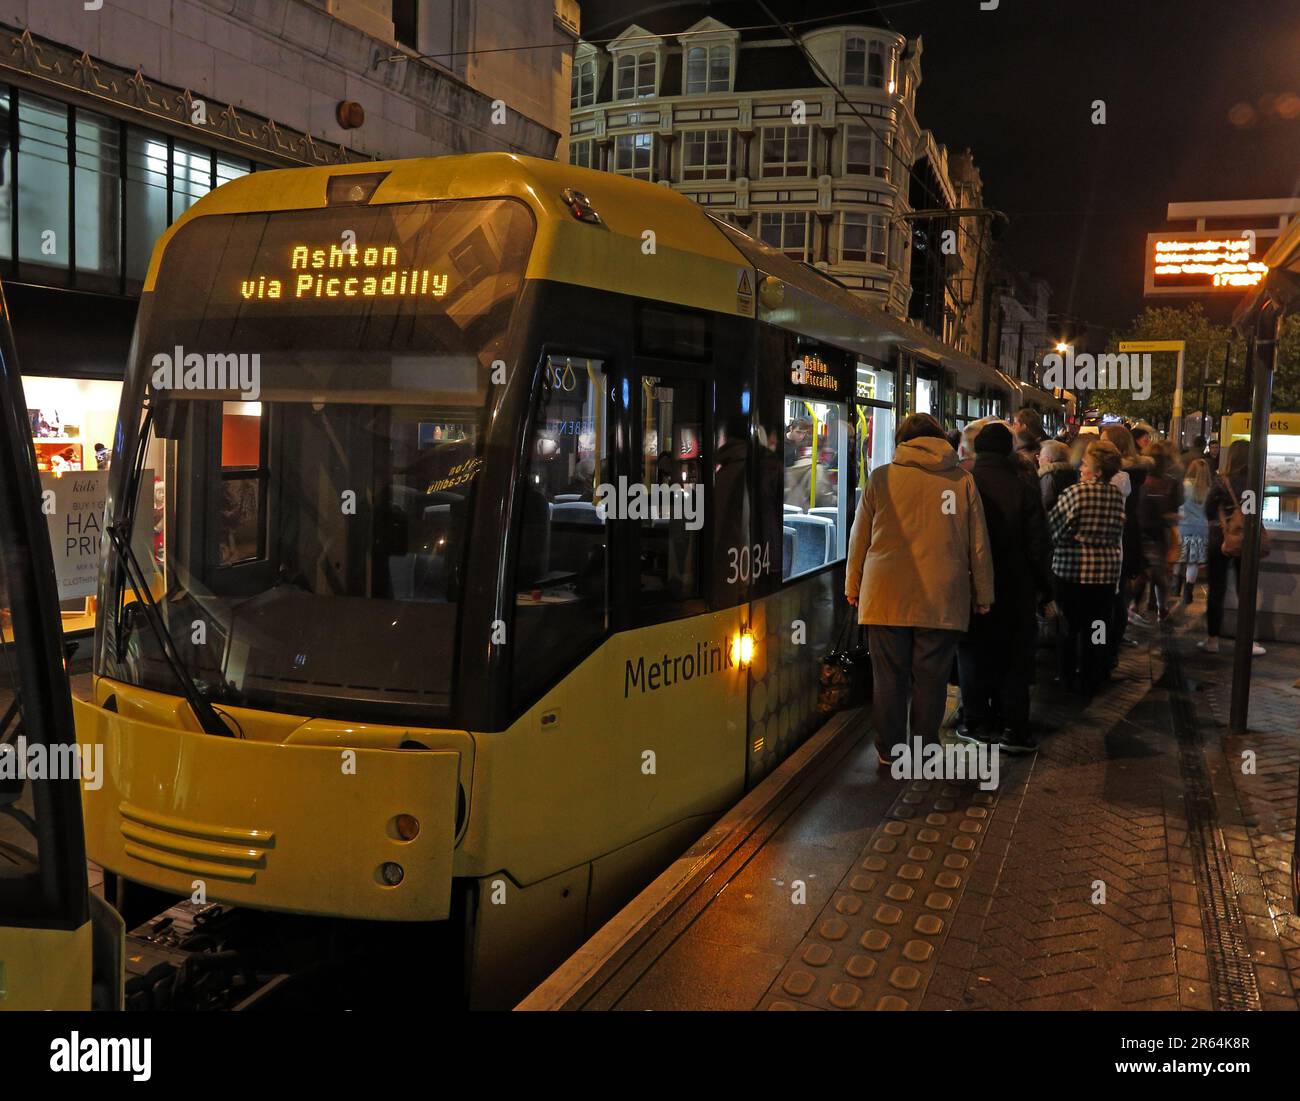 Tramway Metrolink Manchester vers Ashton via Piccadilly, lors d'une soirée pluvieuse, à Market Street, Manchester, Lancashire, Angleterre, ROYAUME-UNI, M1 1PW Banque D'Images